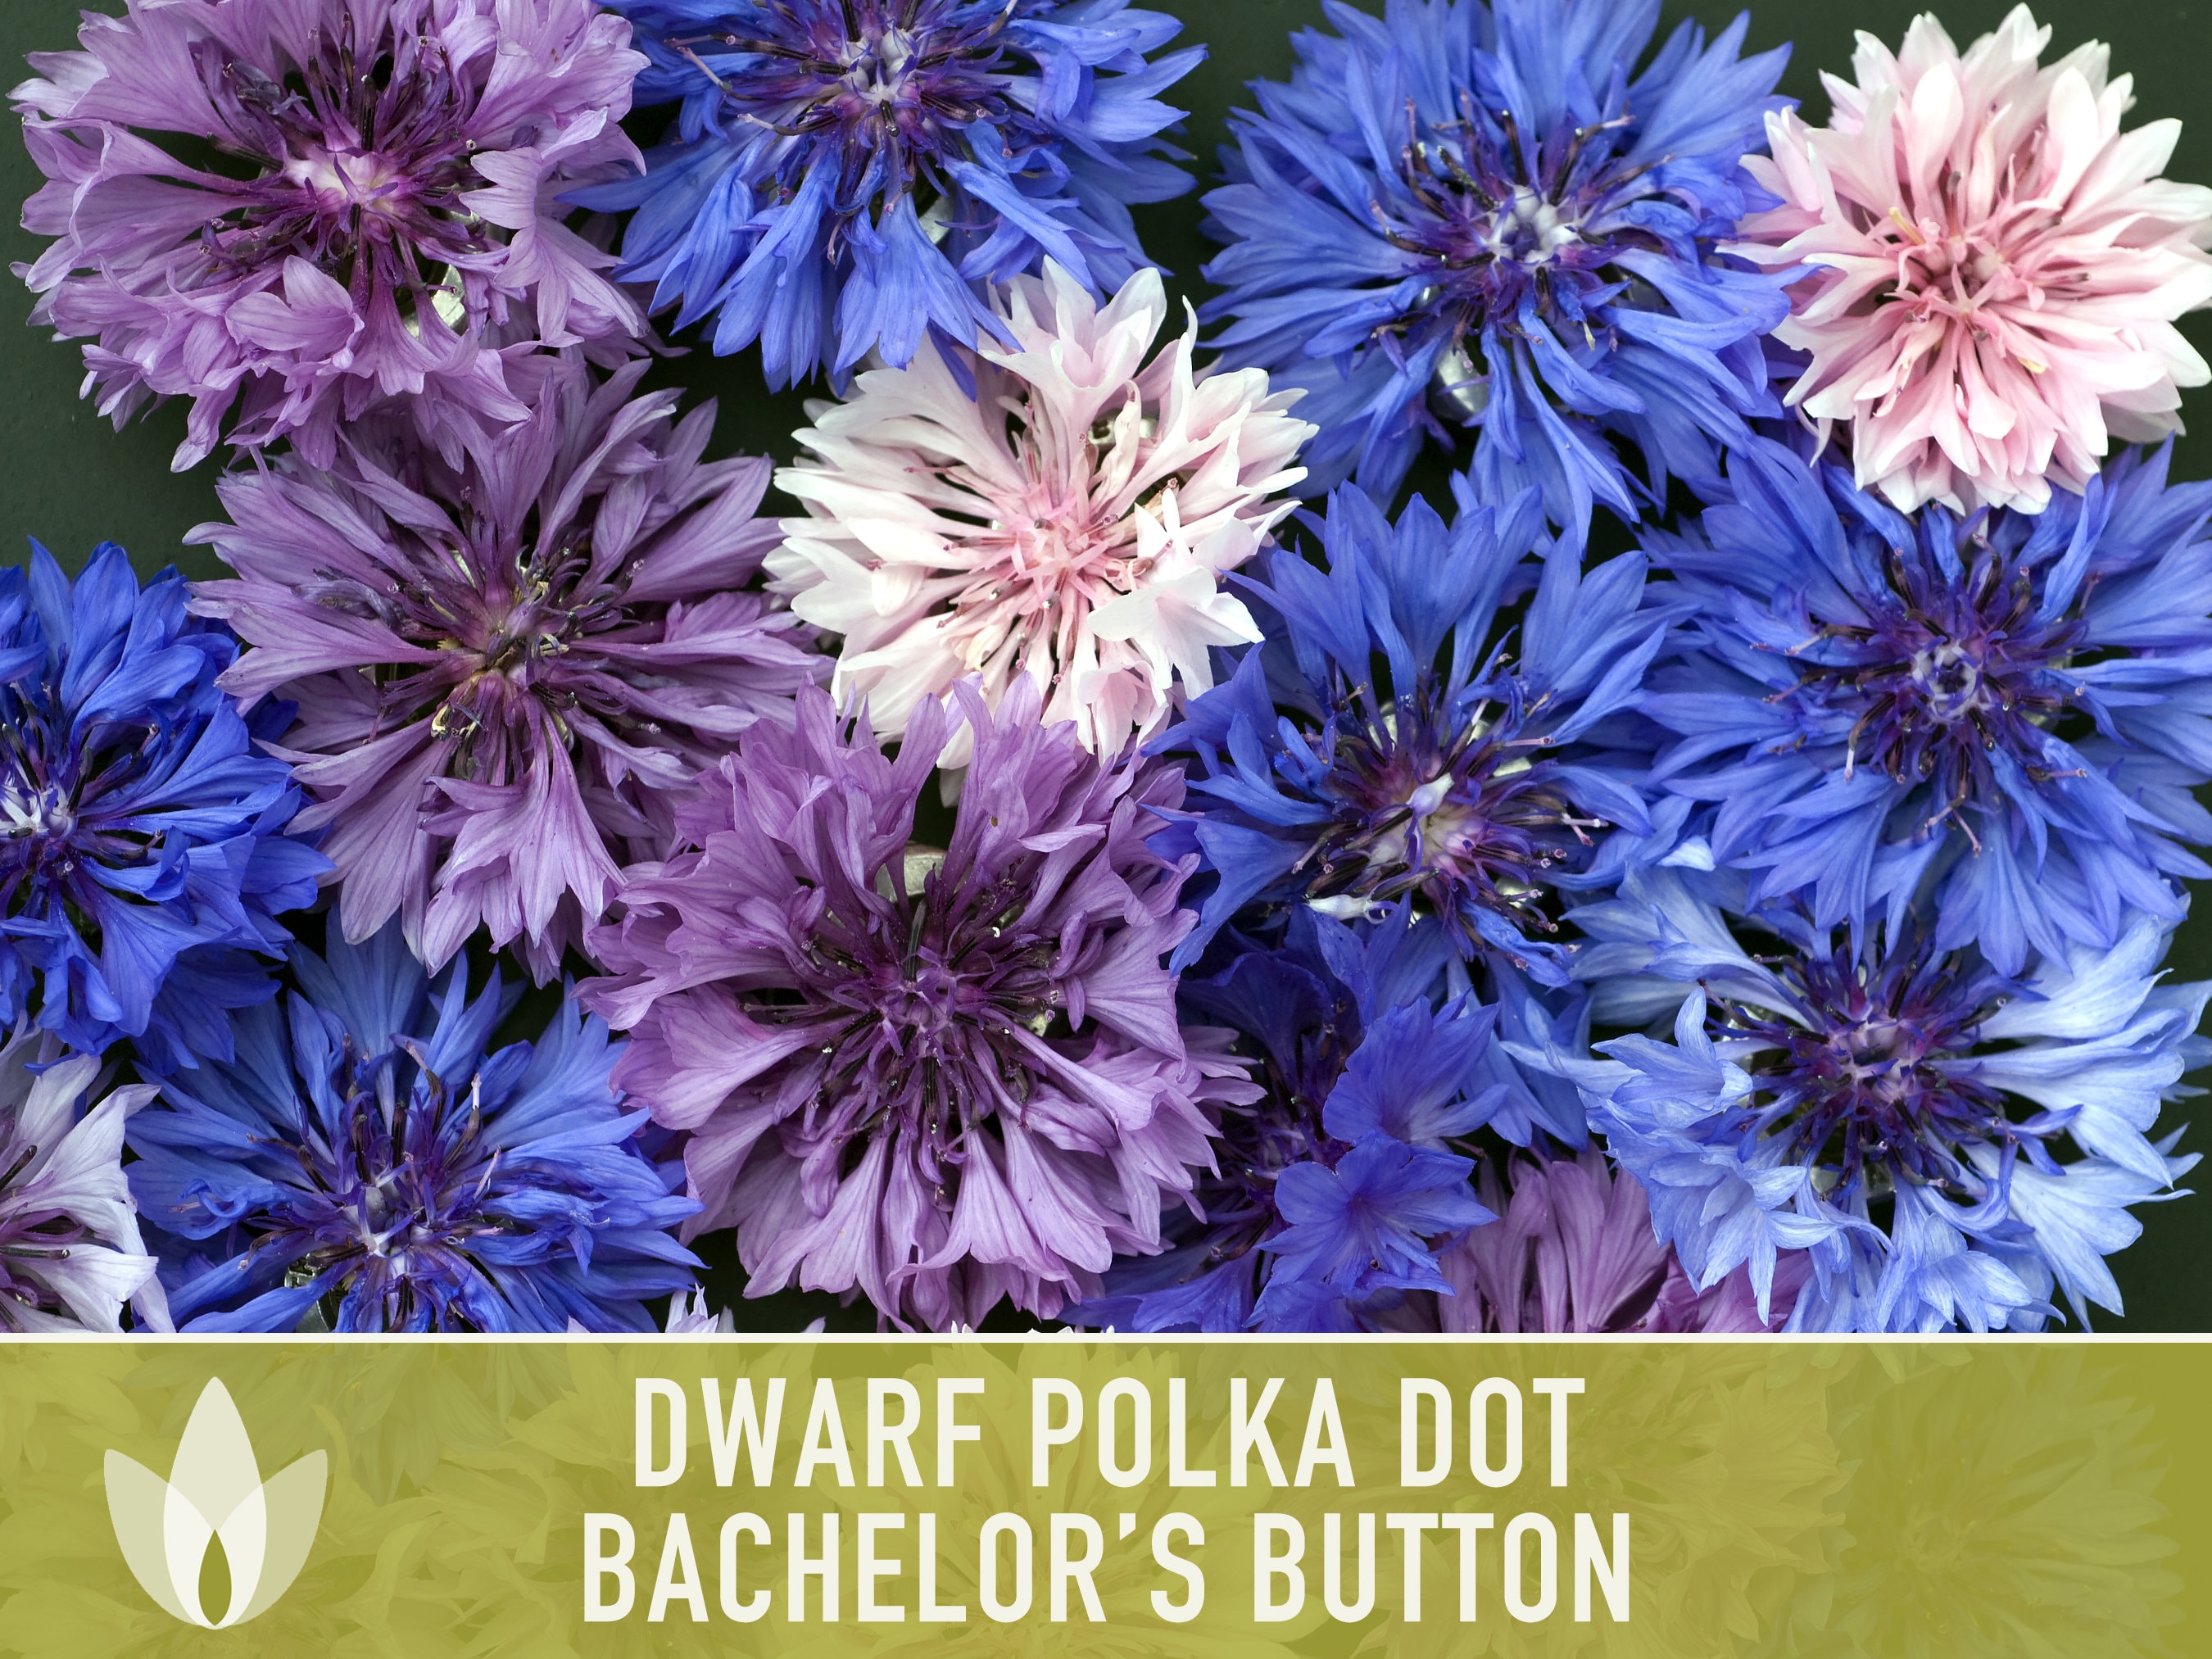 Bachelor Button Seeds, Dwarf Polka Dot Mix Bachelor Button Flower Seed